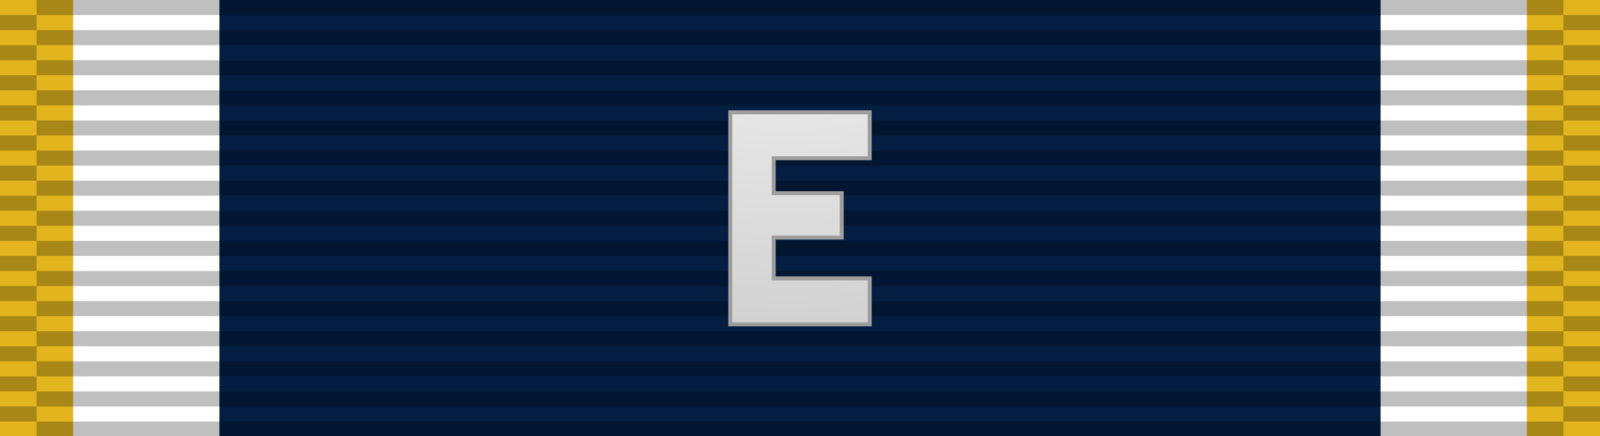 Navy “E” Ribbon